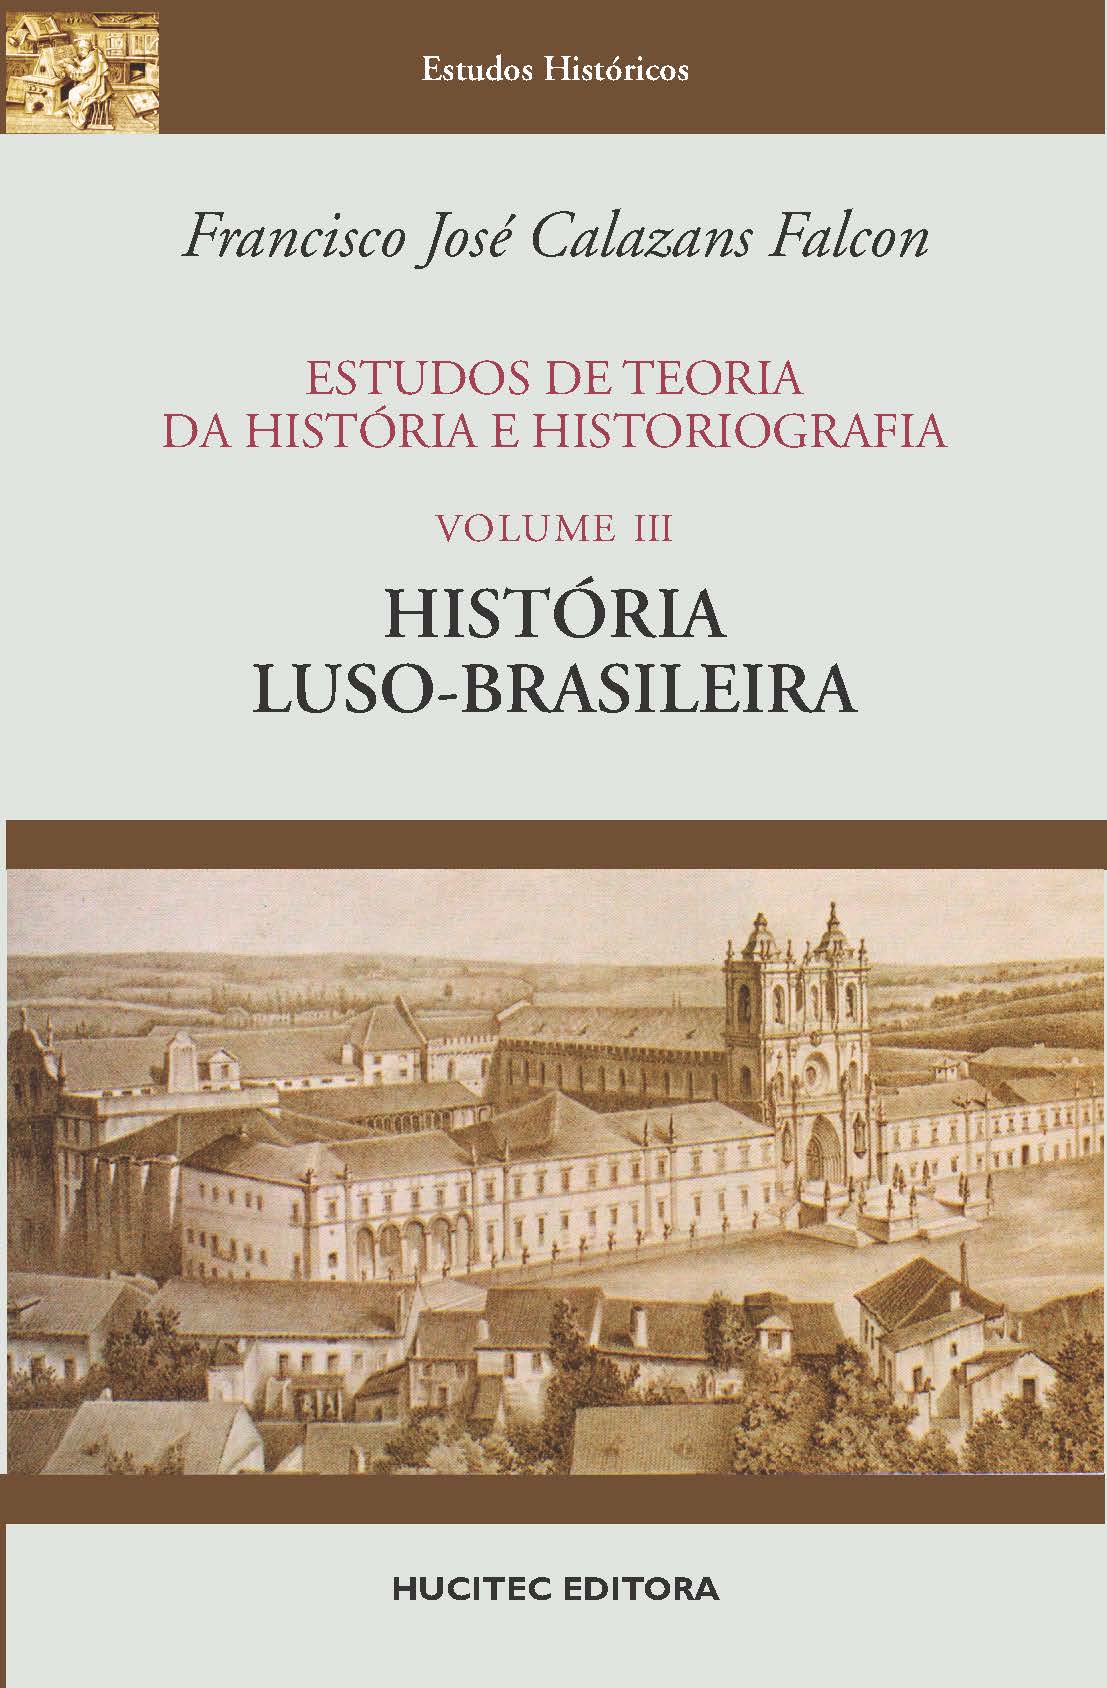 Estudos de teoria da história e historiografia, volume III : História luso-brasileira | Francisco José Calazans Falcon